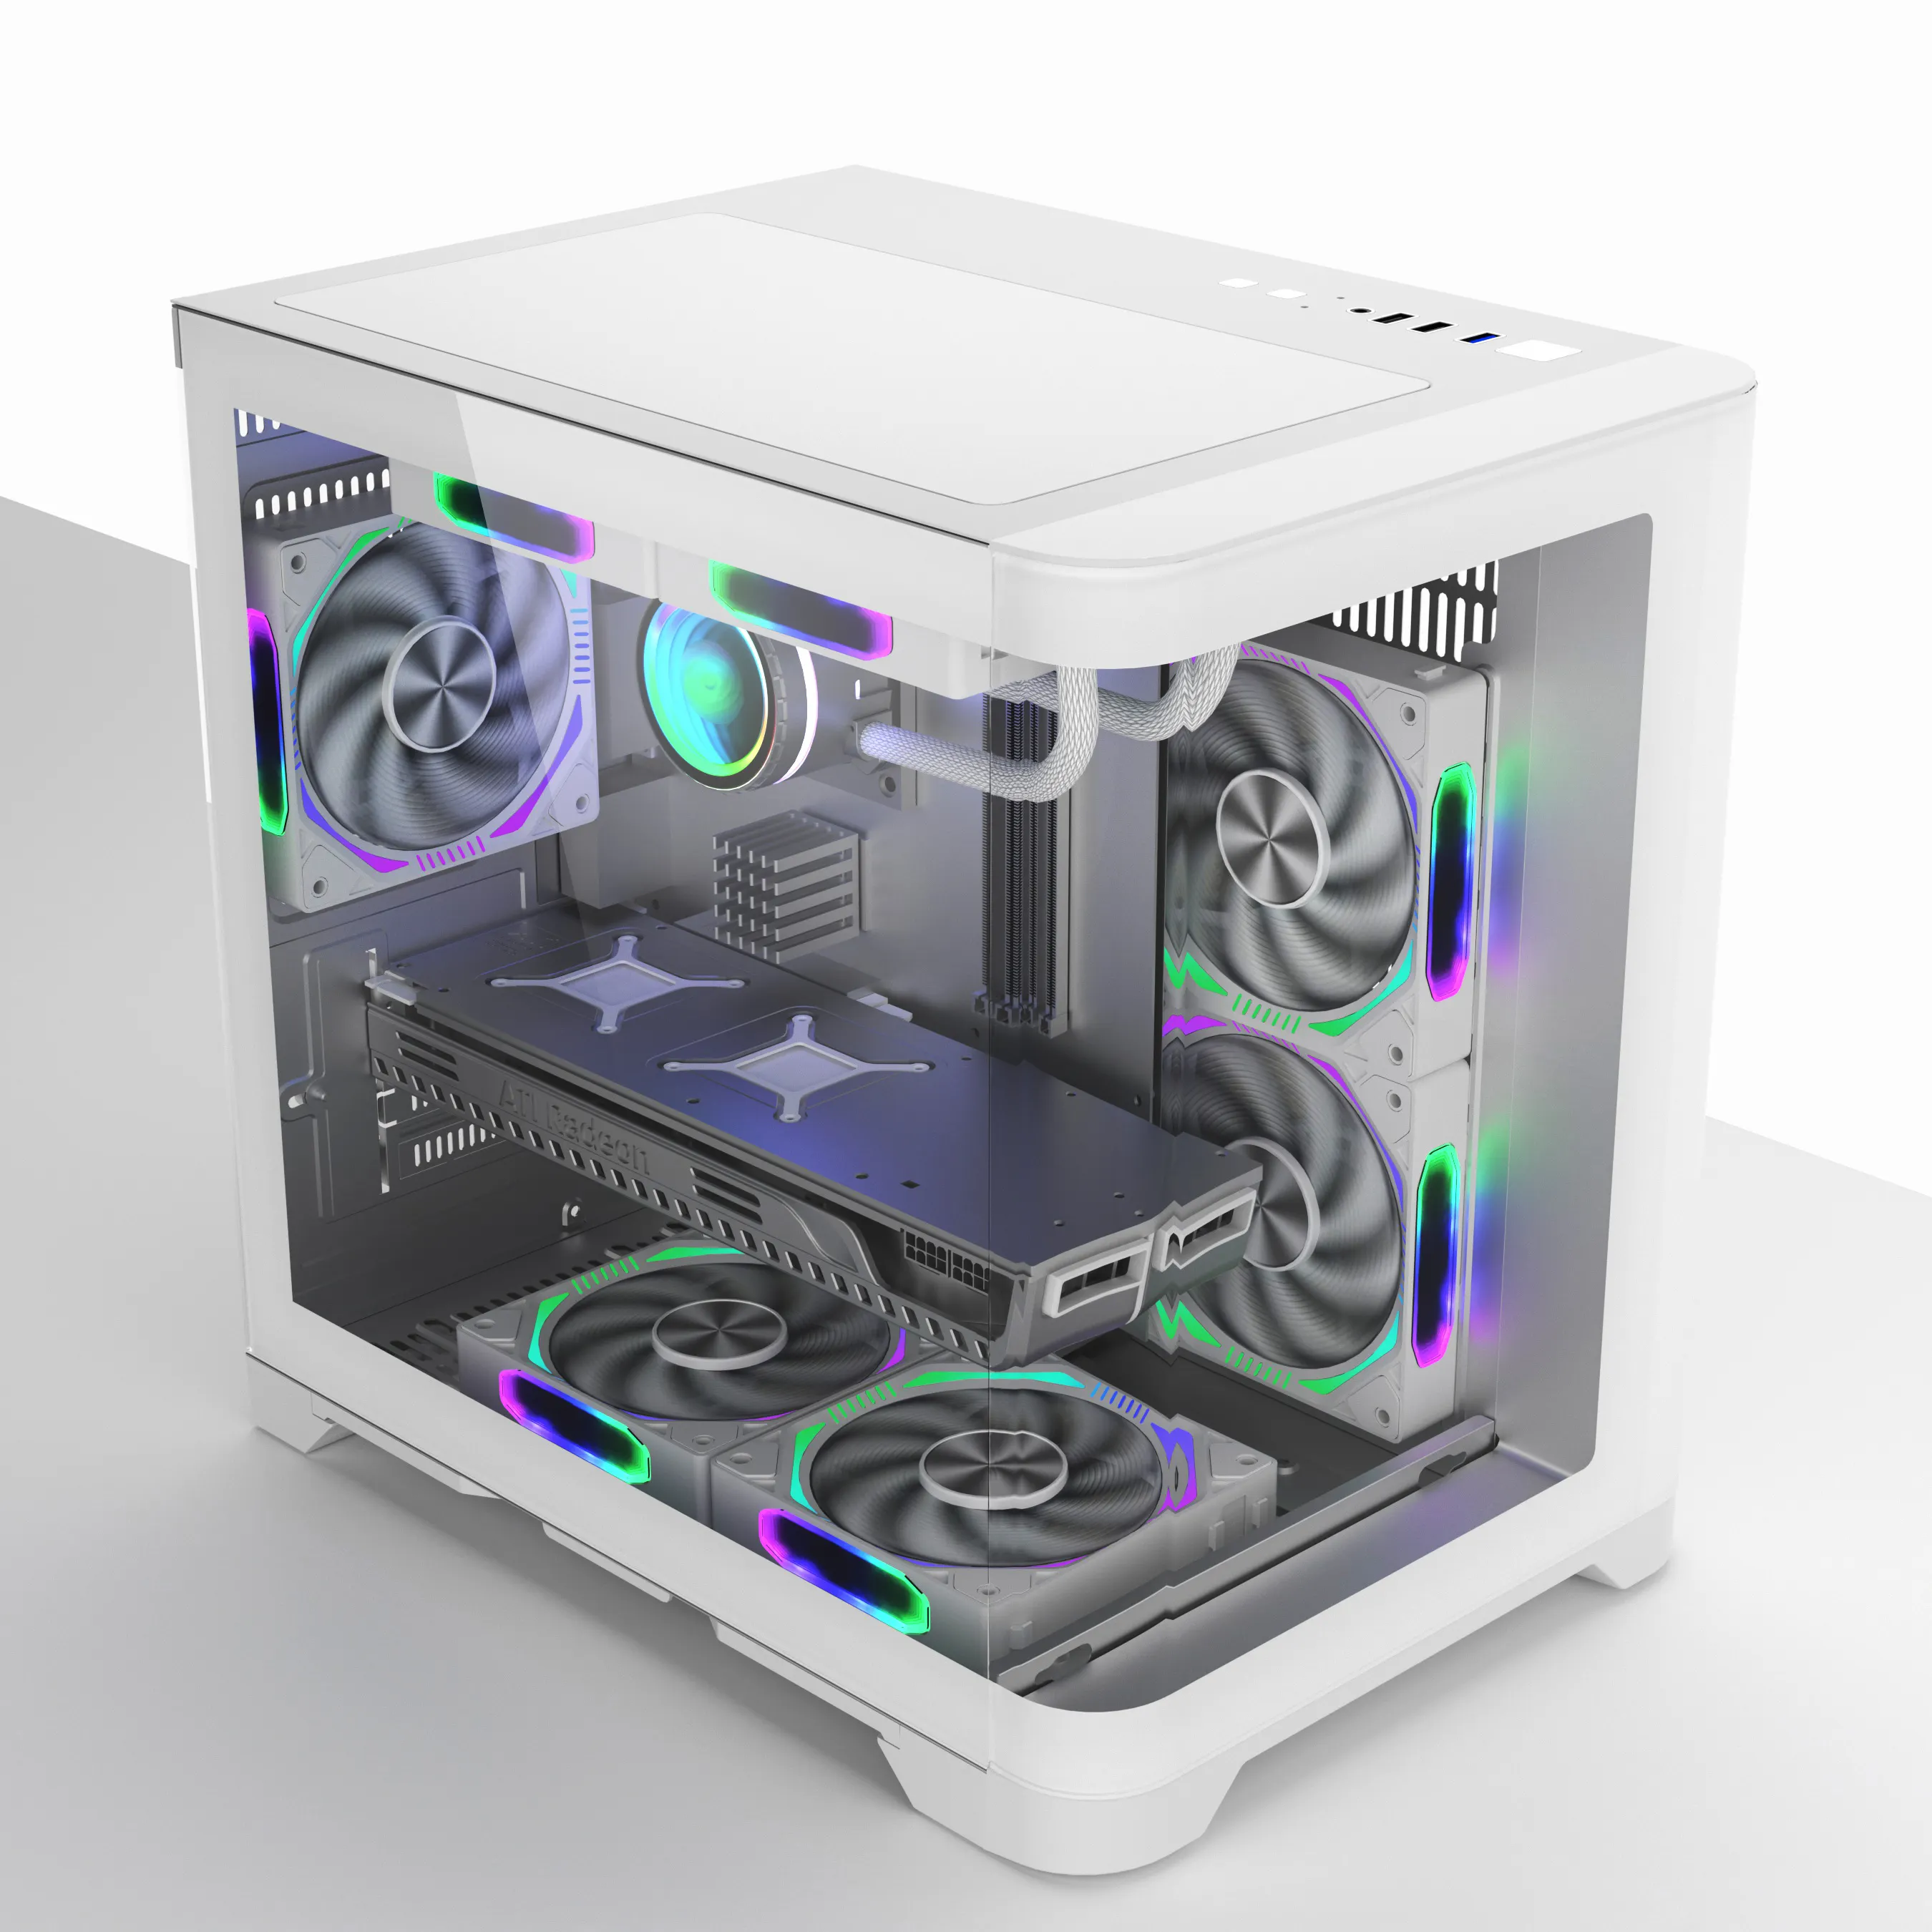 تصميم جديد من المصنع علبة كمبيوتر للألعاب بيضاء MATX هيكل سطح المكتب لوحة زجاجية منحنية لمنتصف برج CPU خزانة للألعاب